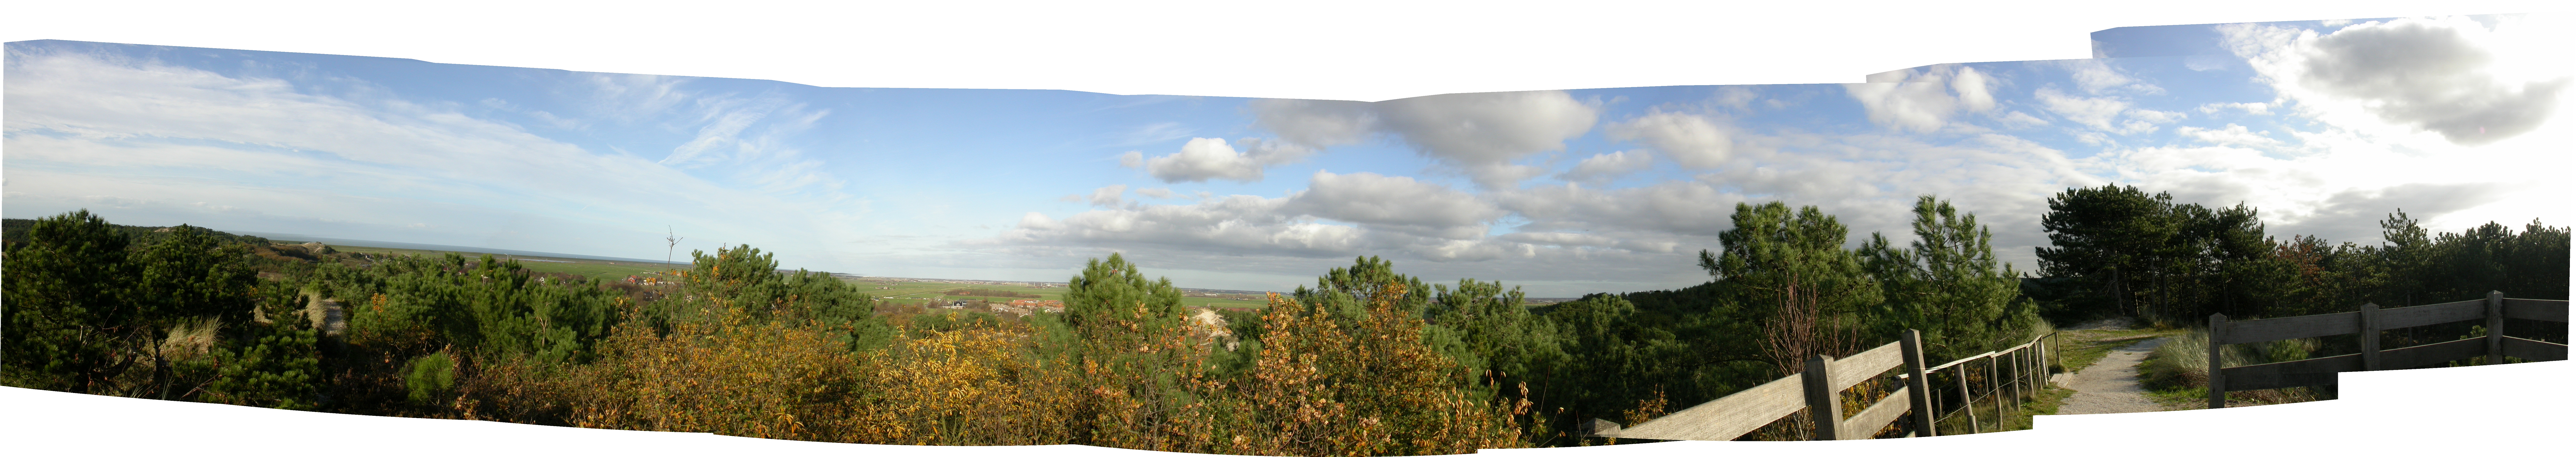 paul panorama schoorl noord holland the netherlands farm lands dunes windmills